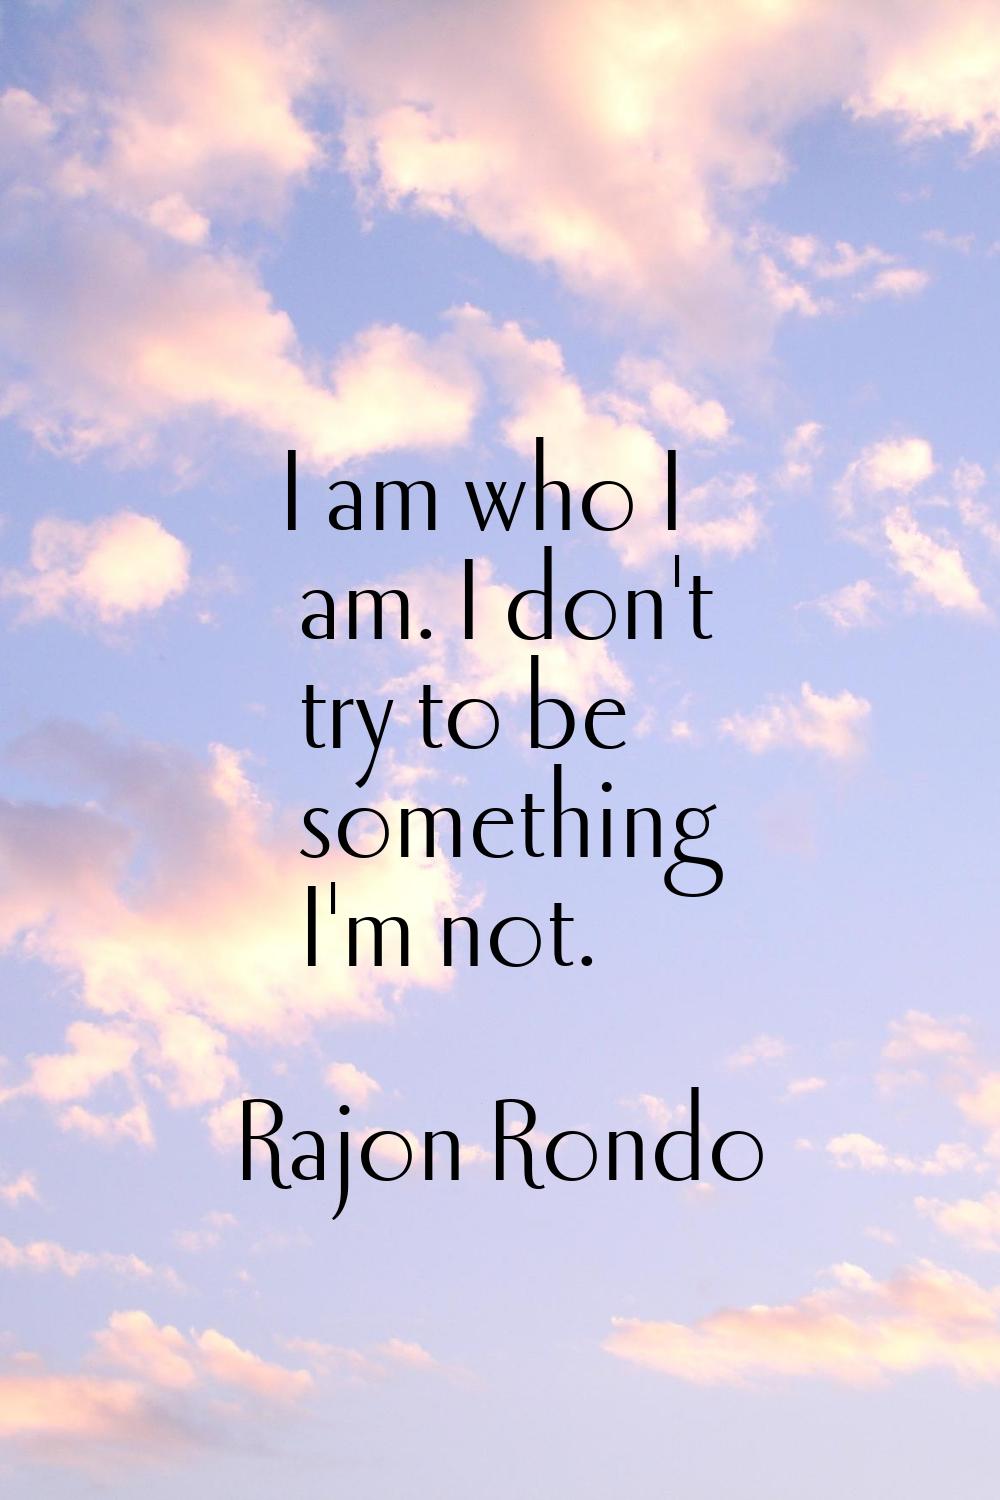 I am who I am. I don't try to be something I'm not.